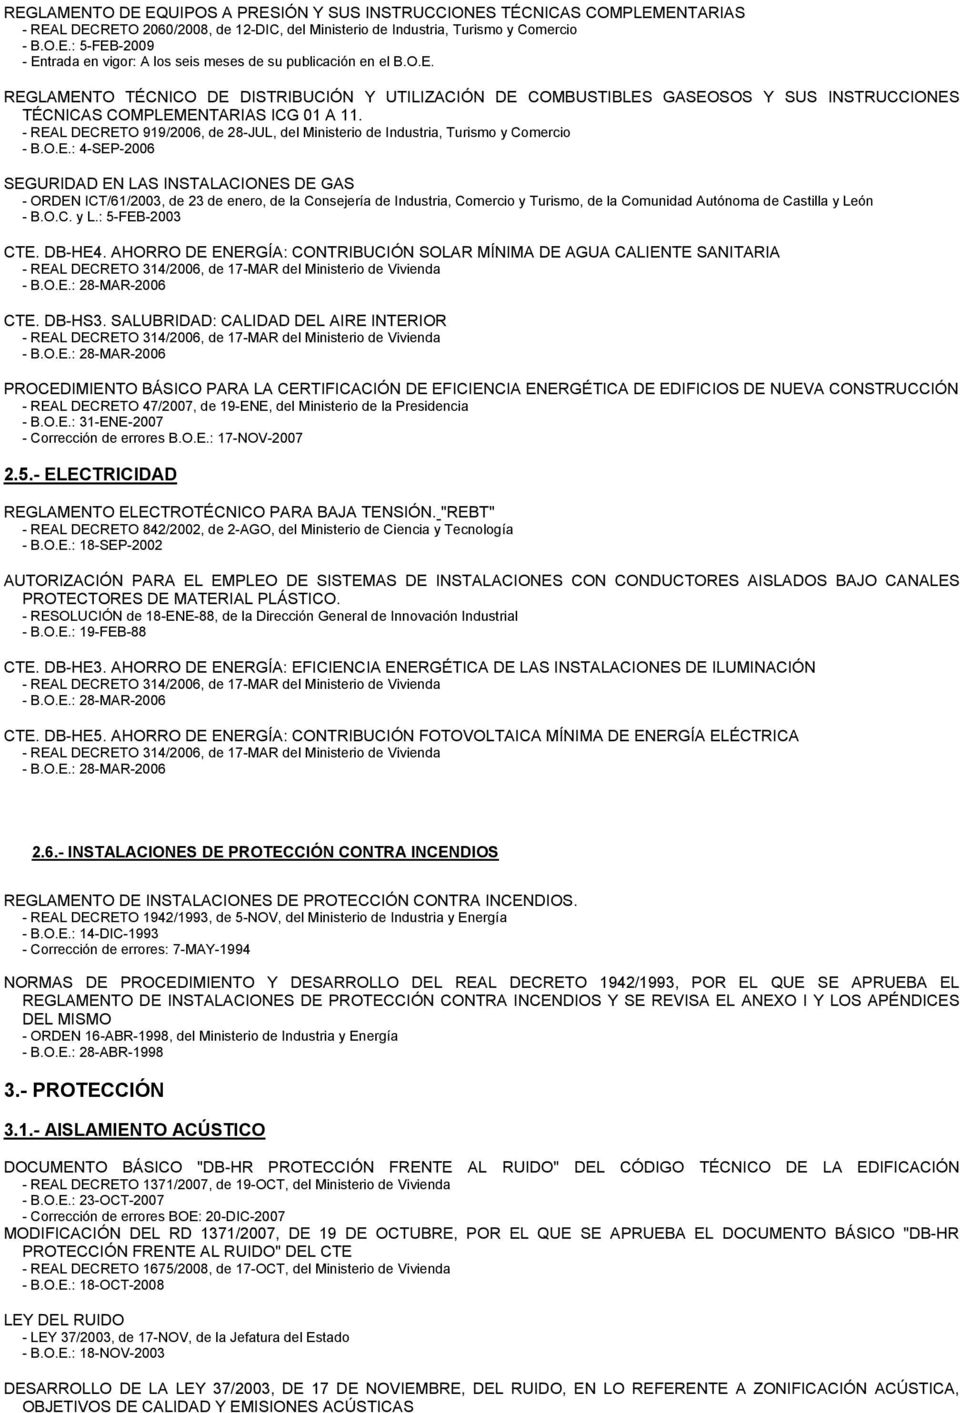 - REAL DECRETO 919/2006, de 28-JUL, del Ministerio de Industria, Turismo y Comercio - B.O.E.: 4-SEP-2006 SEGURIDAD EN LAS INSTALACIONES DE GAS - ORDEN ICT/61/2003, de 23 de enero, de la Consejería de Industria, Comercio y Turismo, de la Comunidad Autónoma de Castilla y León - B.